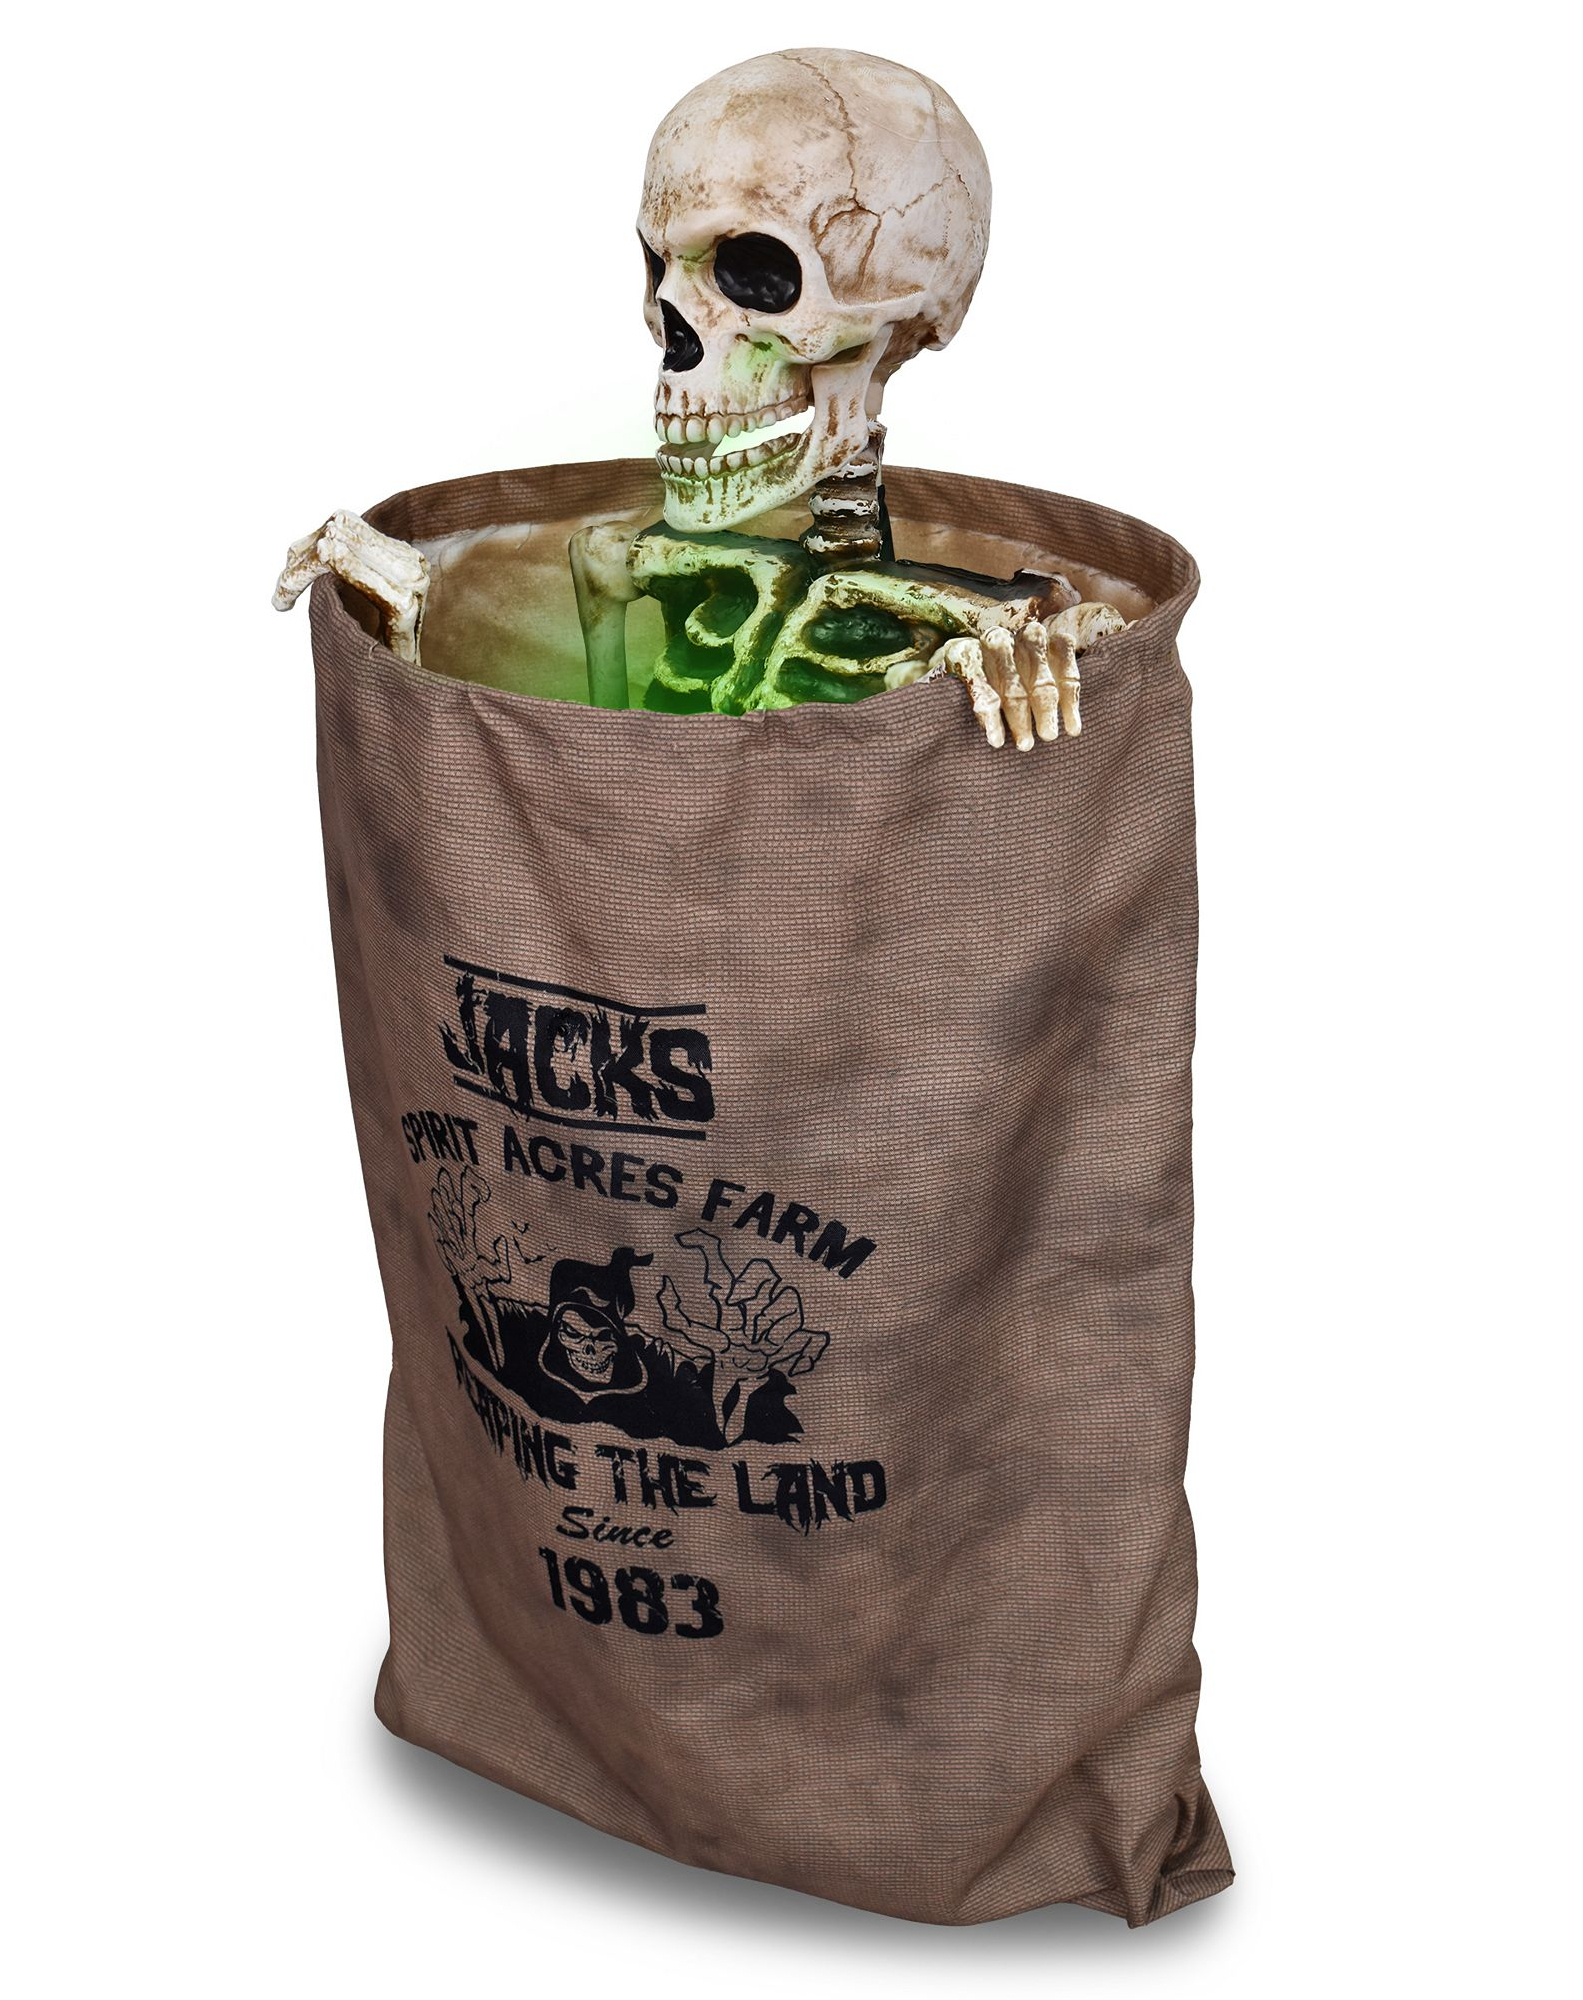 Bag of bones